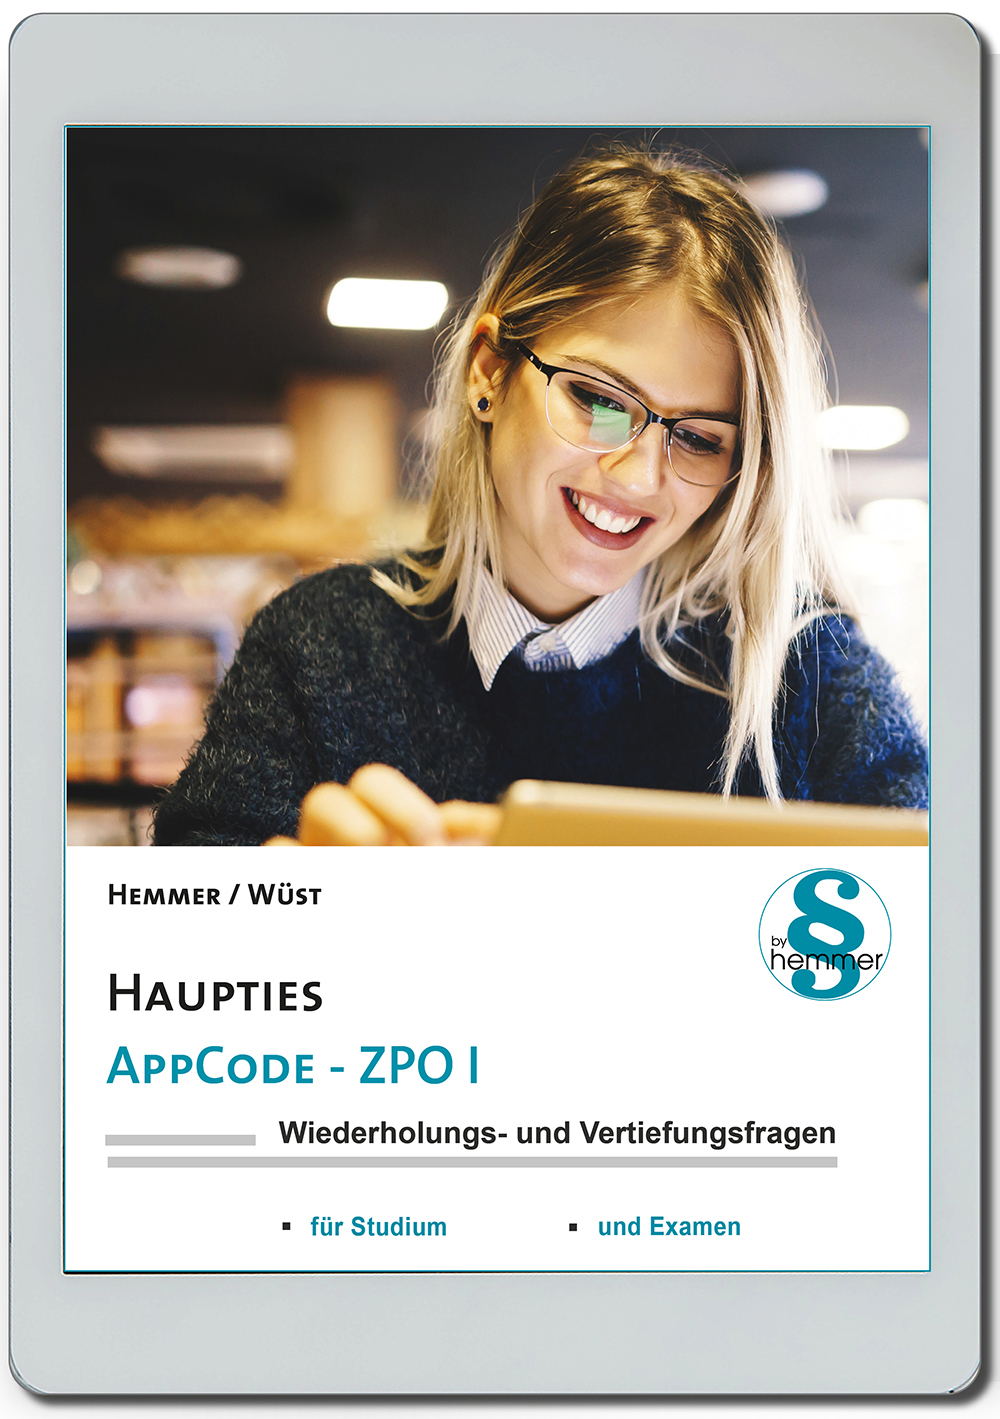 AppCode - haupties - Zivilprozessrecht I